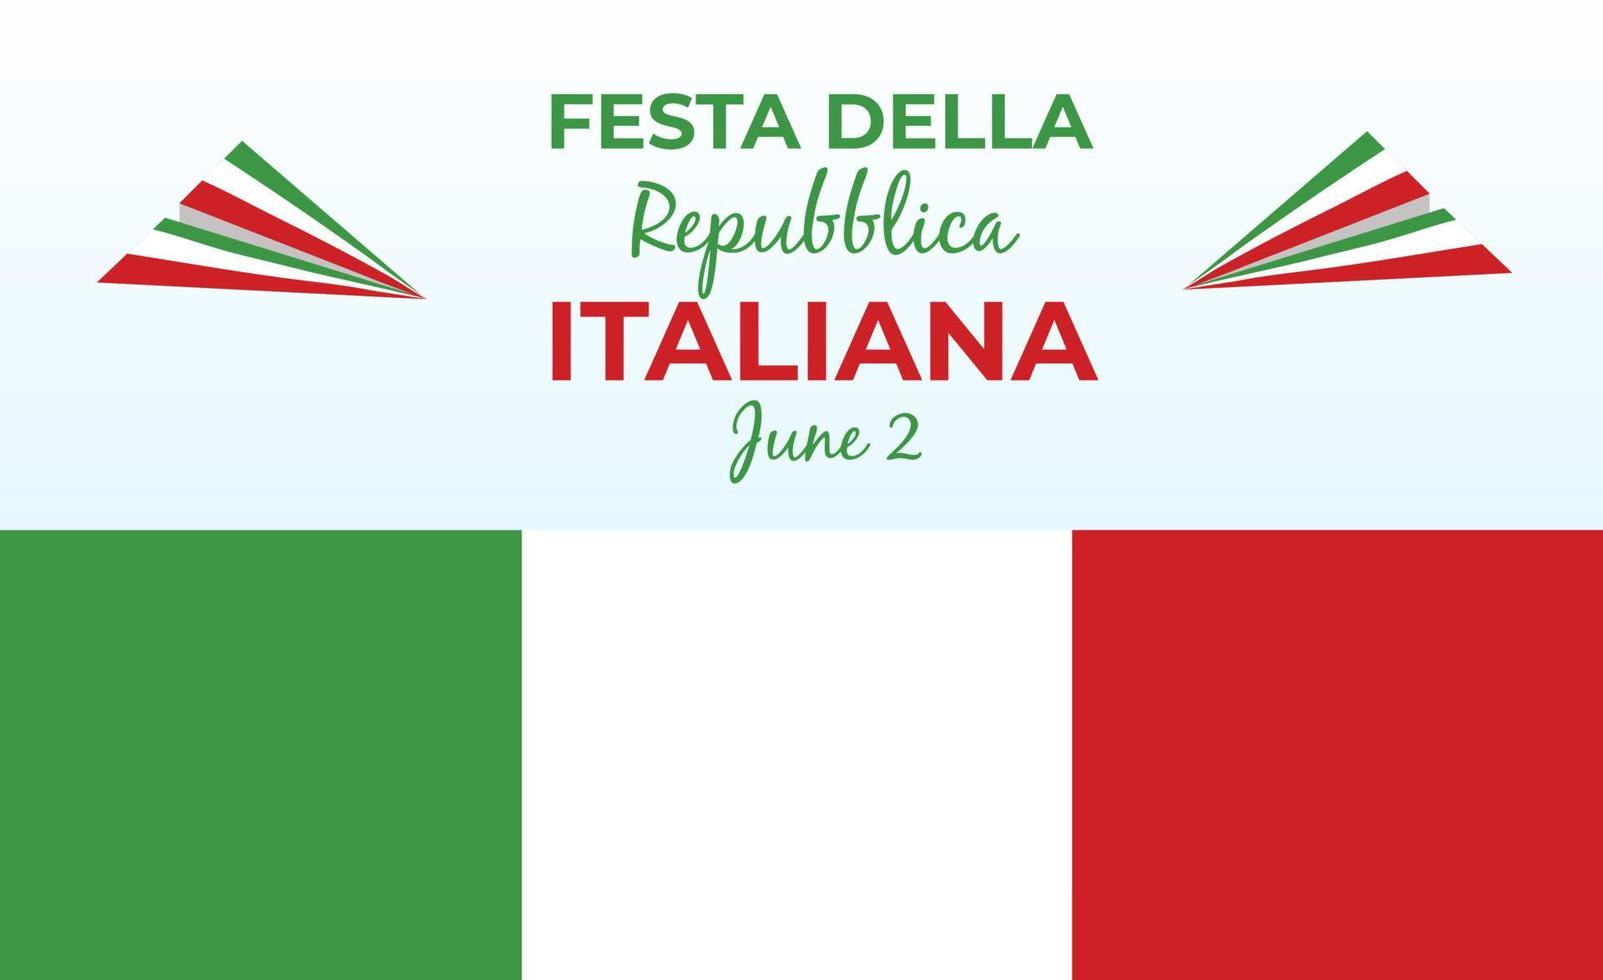 italiano república día, 2º junio, festa della republica italiana, doblado ondulación cinta en colores de el italiano nacional bandera. celebracion antecedentes vector